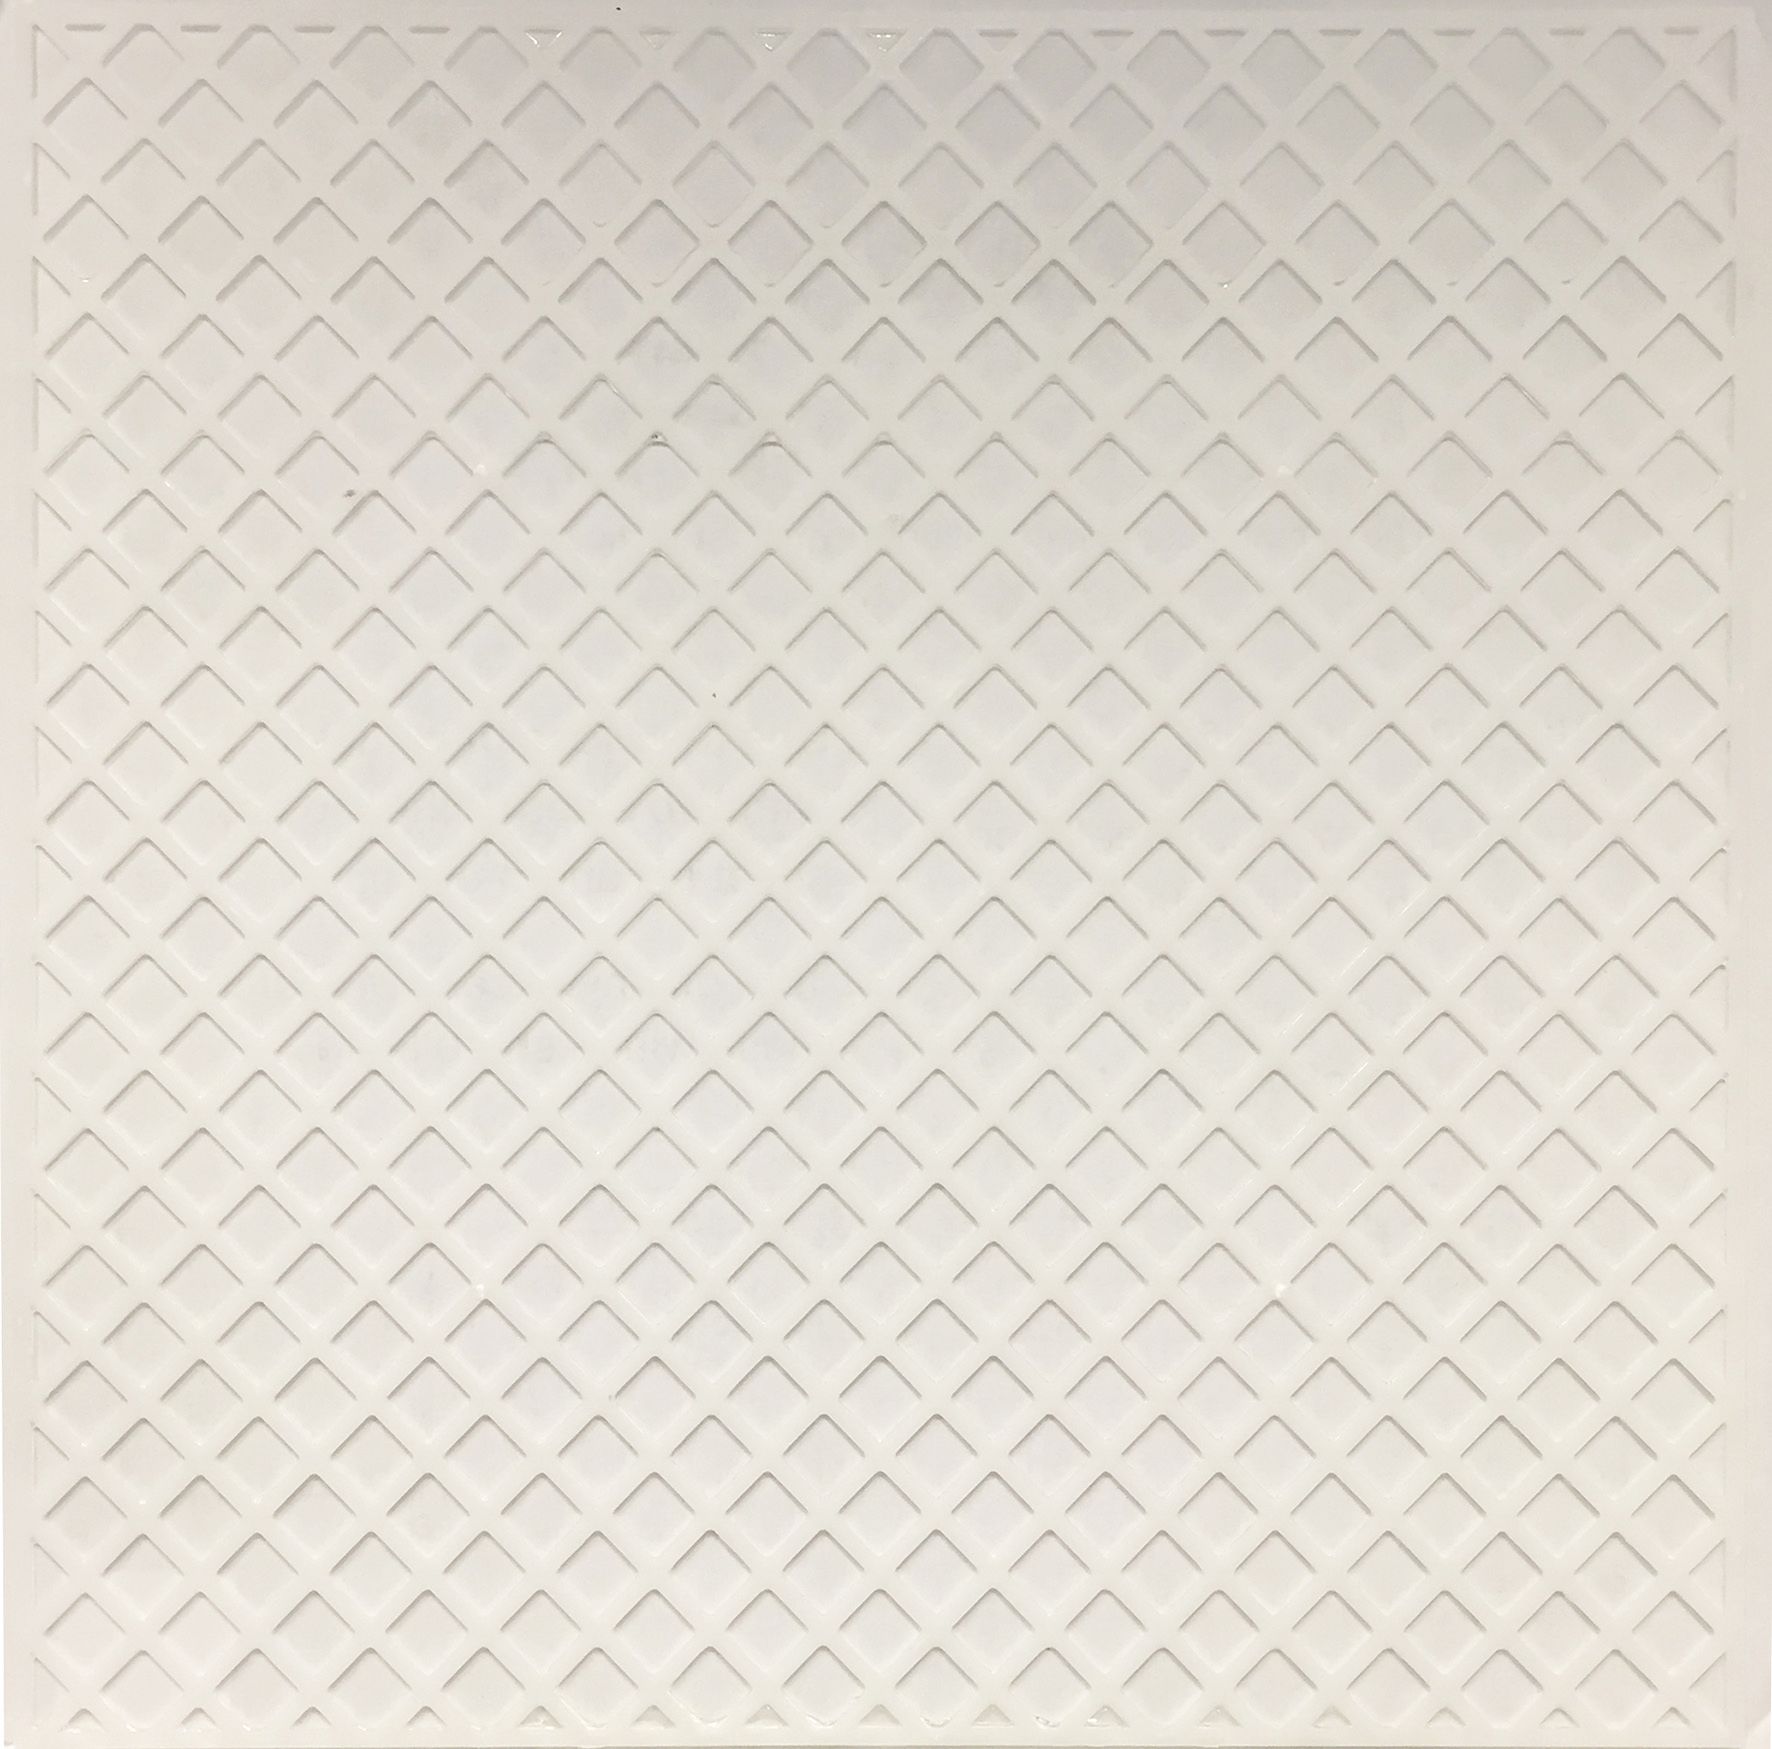 Image of Wickes Mosaicfix Mesh Backing Sheet 300 x 300mm